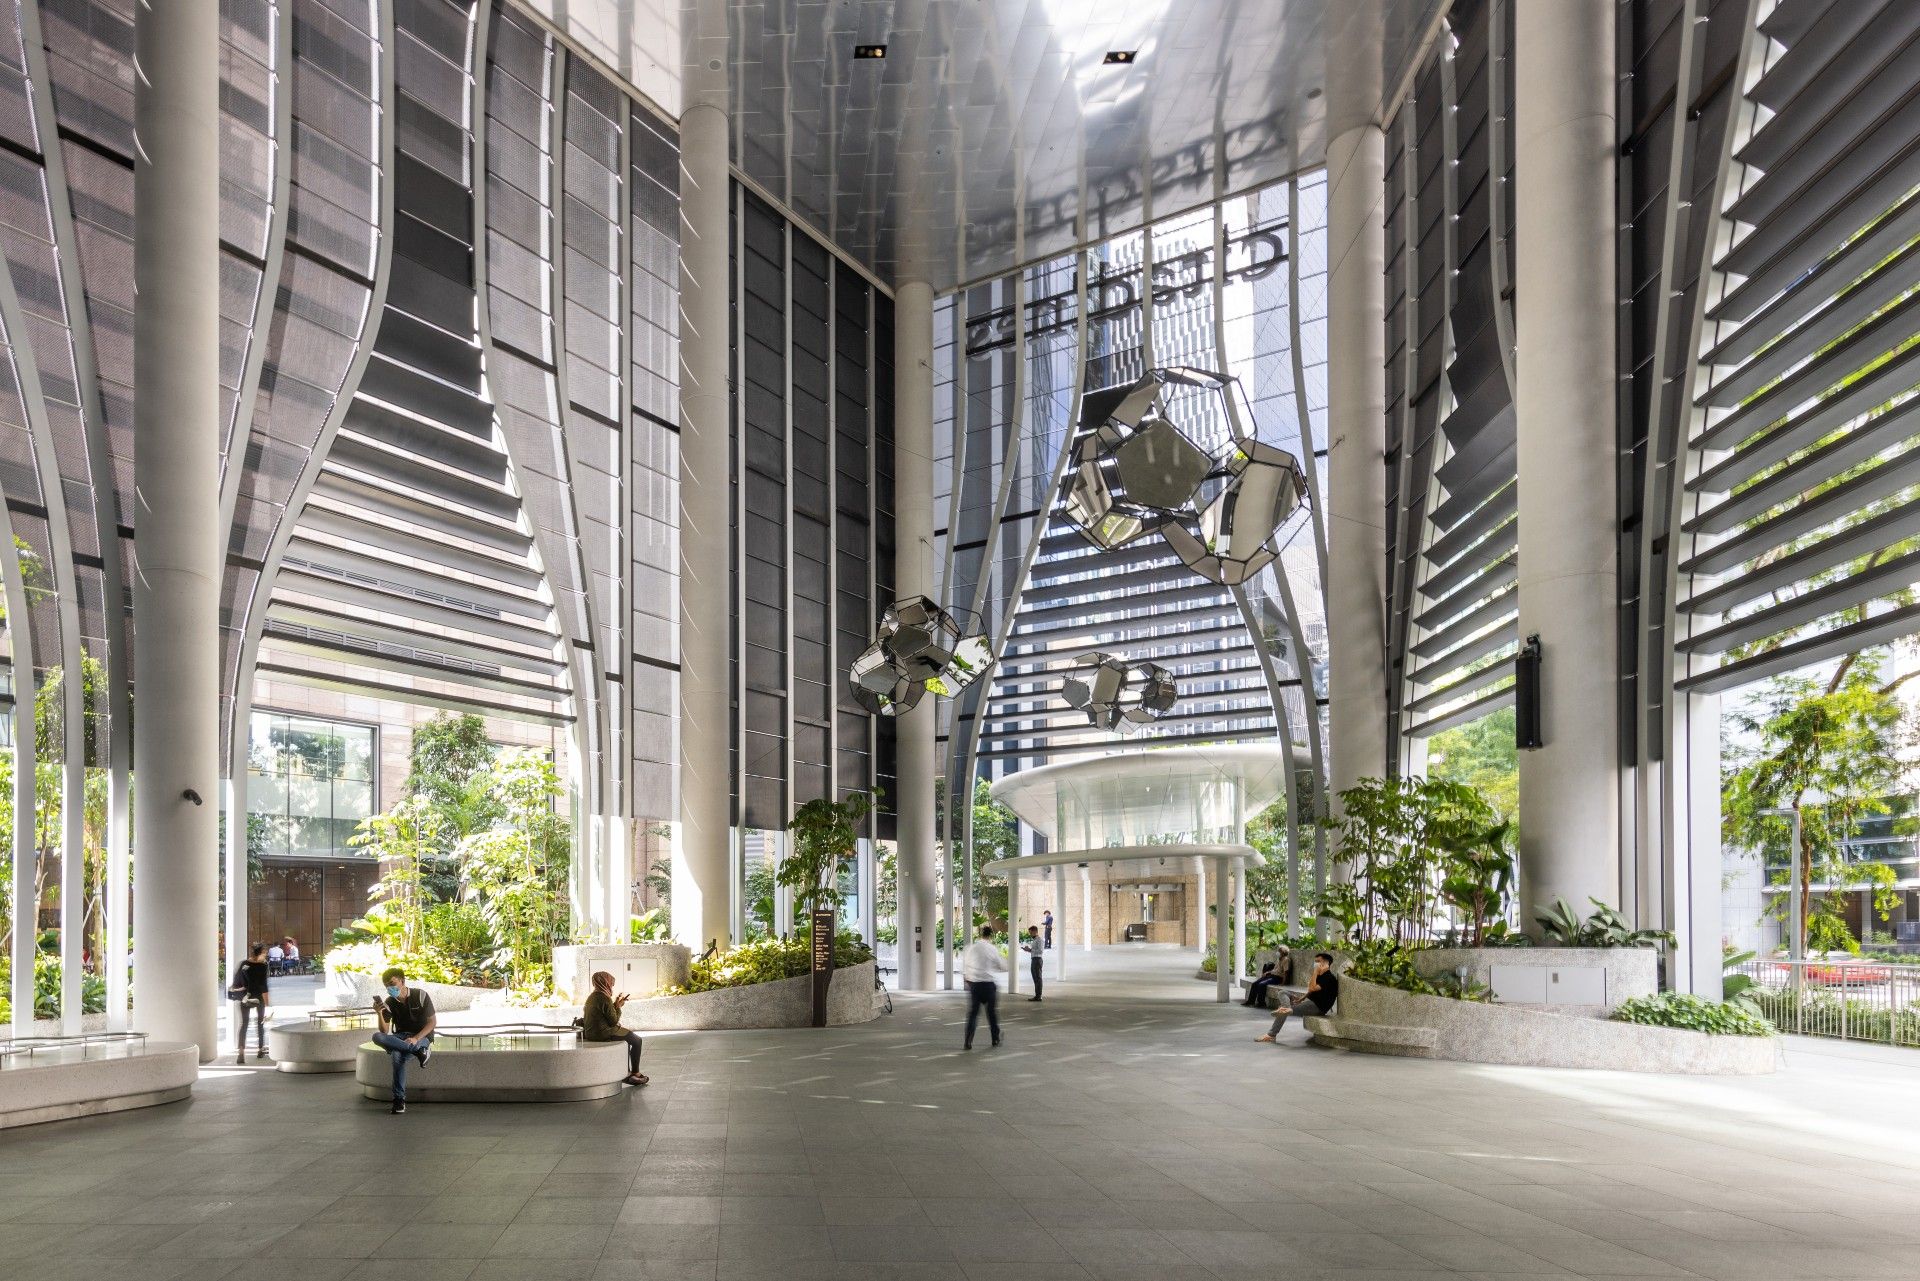 Galeria de CapitaSpring Tower projetada por BIG e Carlo Ratti é inaugurada  em Singapura - 20